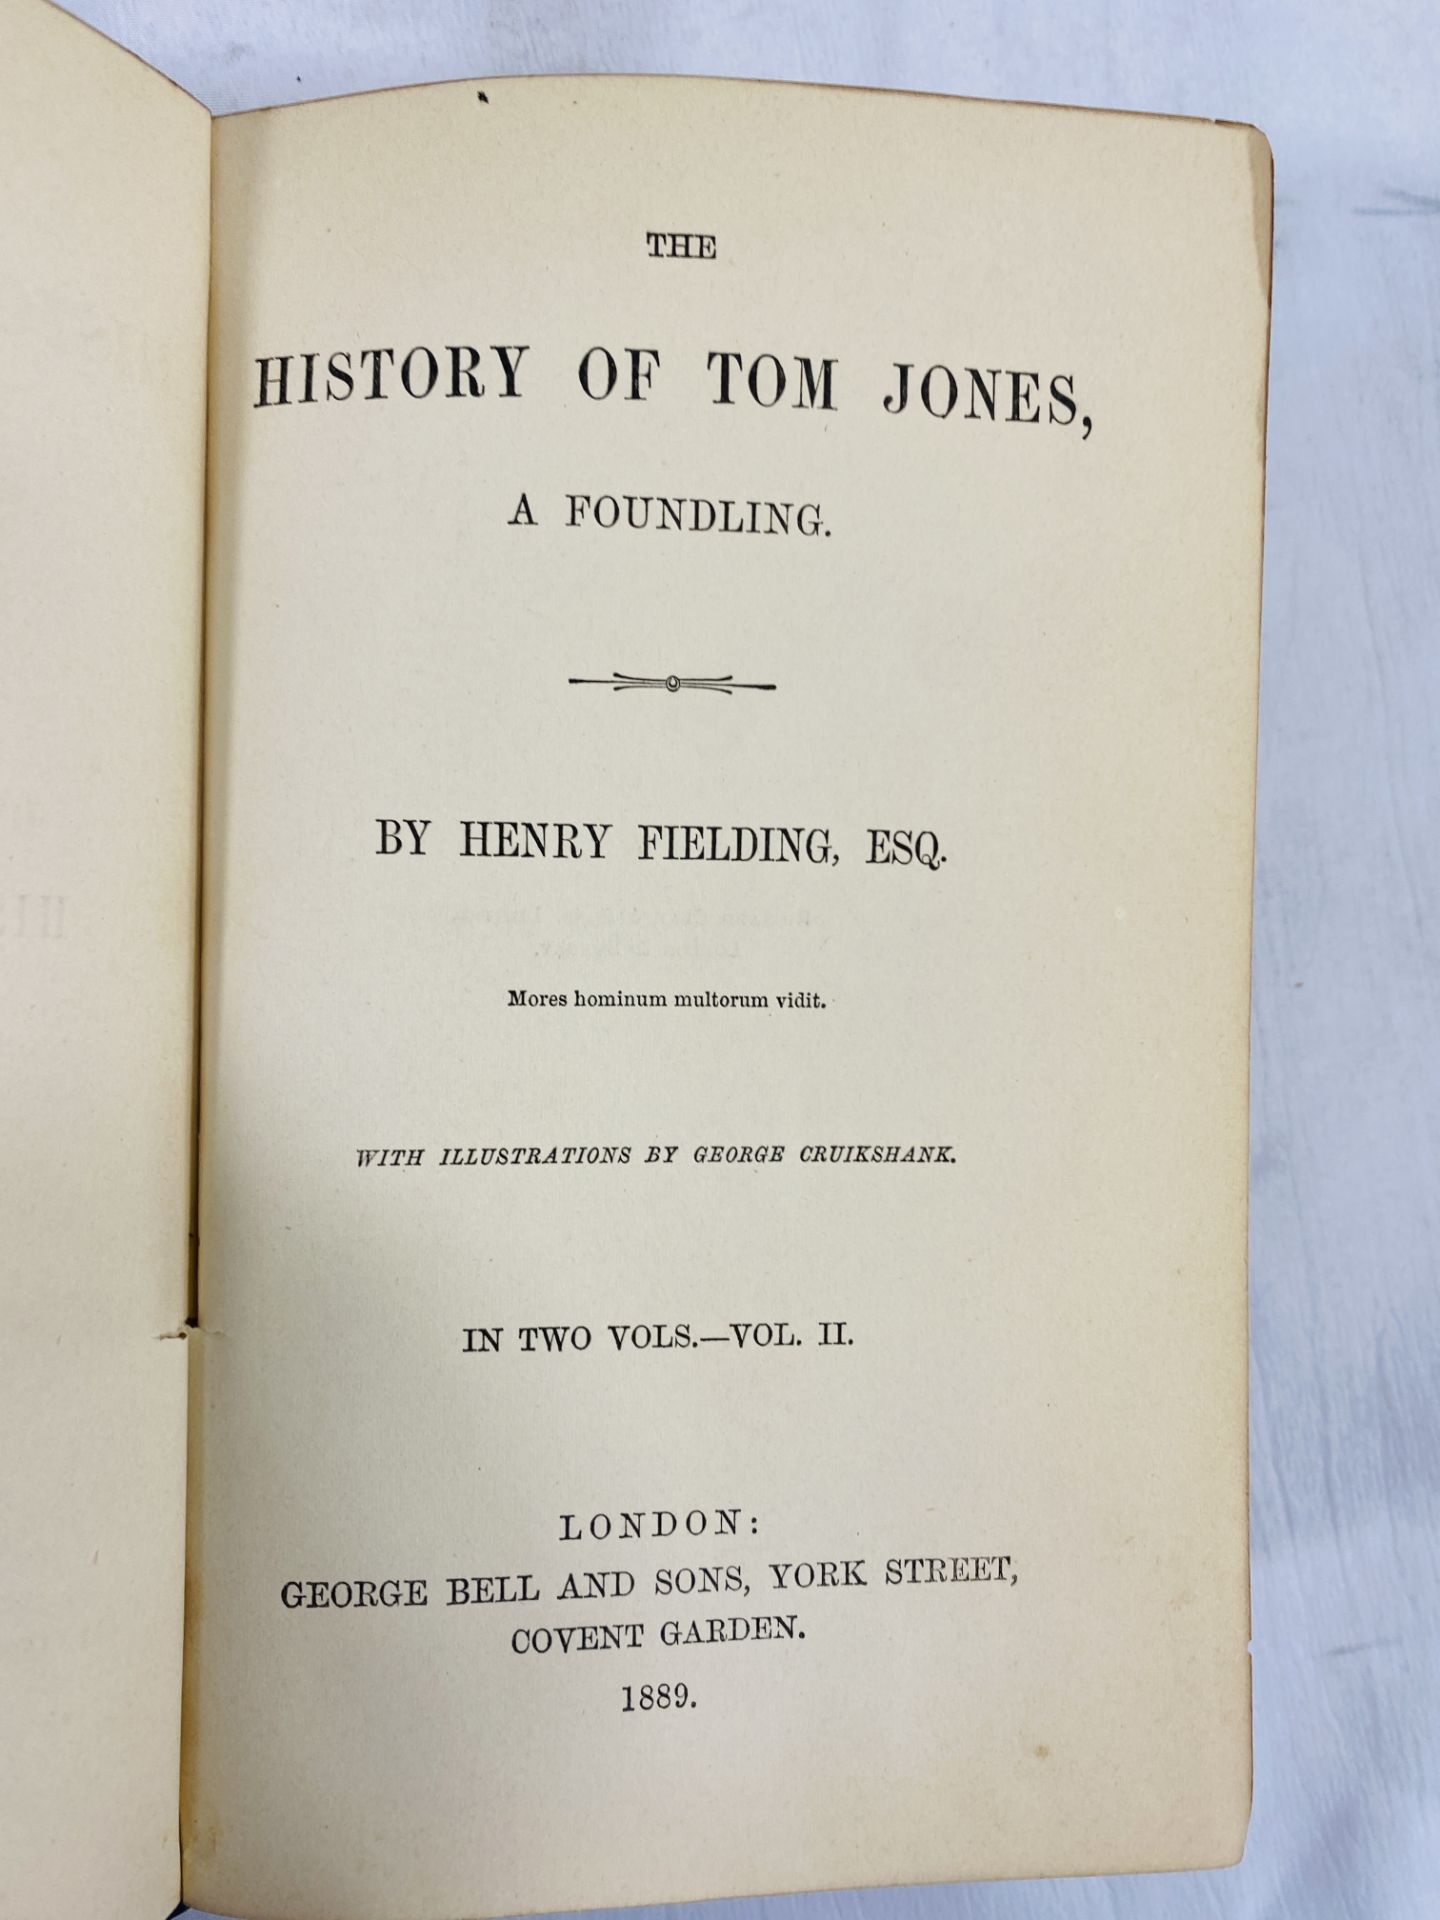 Tom Jones by Fielding, 1889 - Image 5 of 5